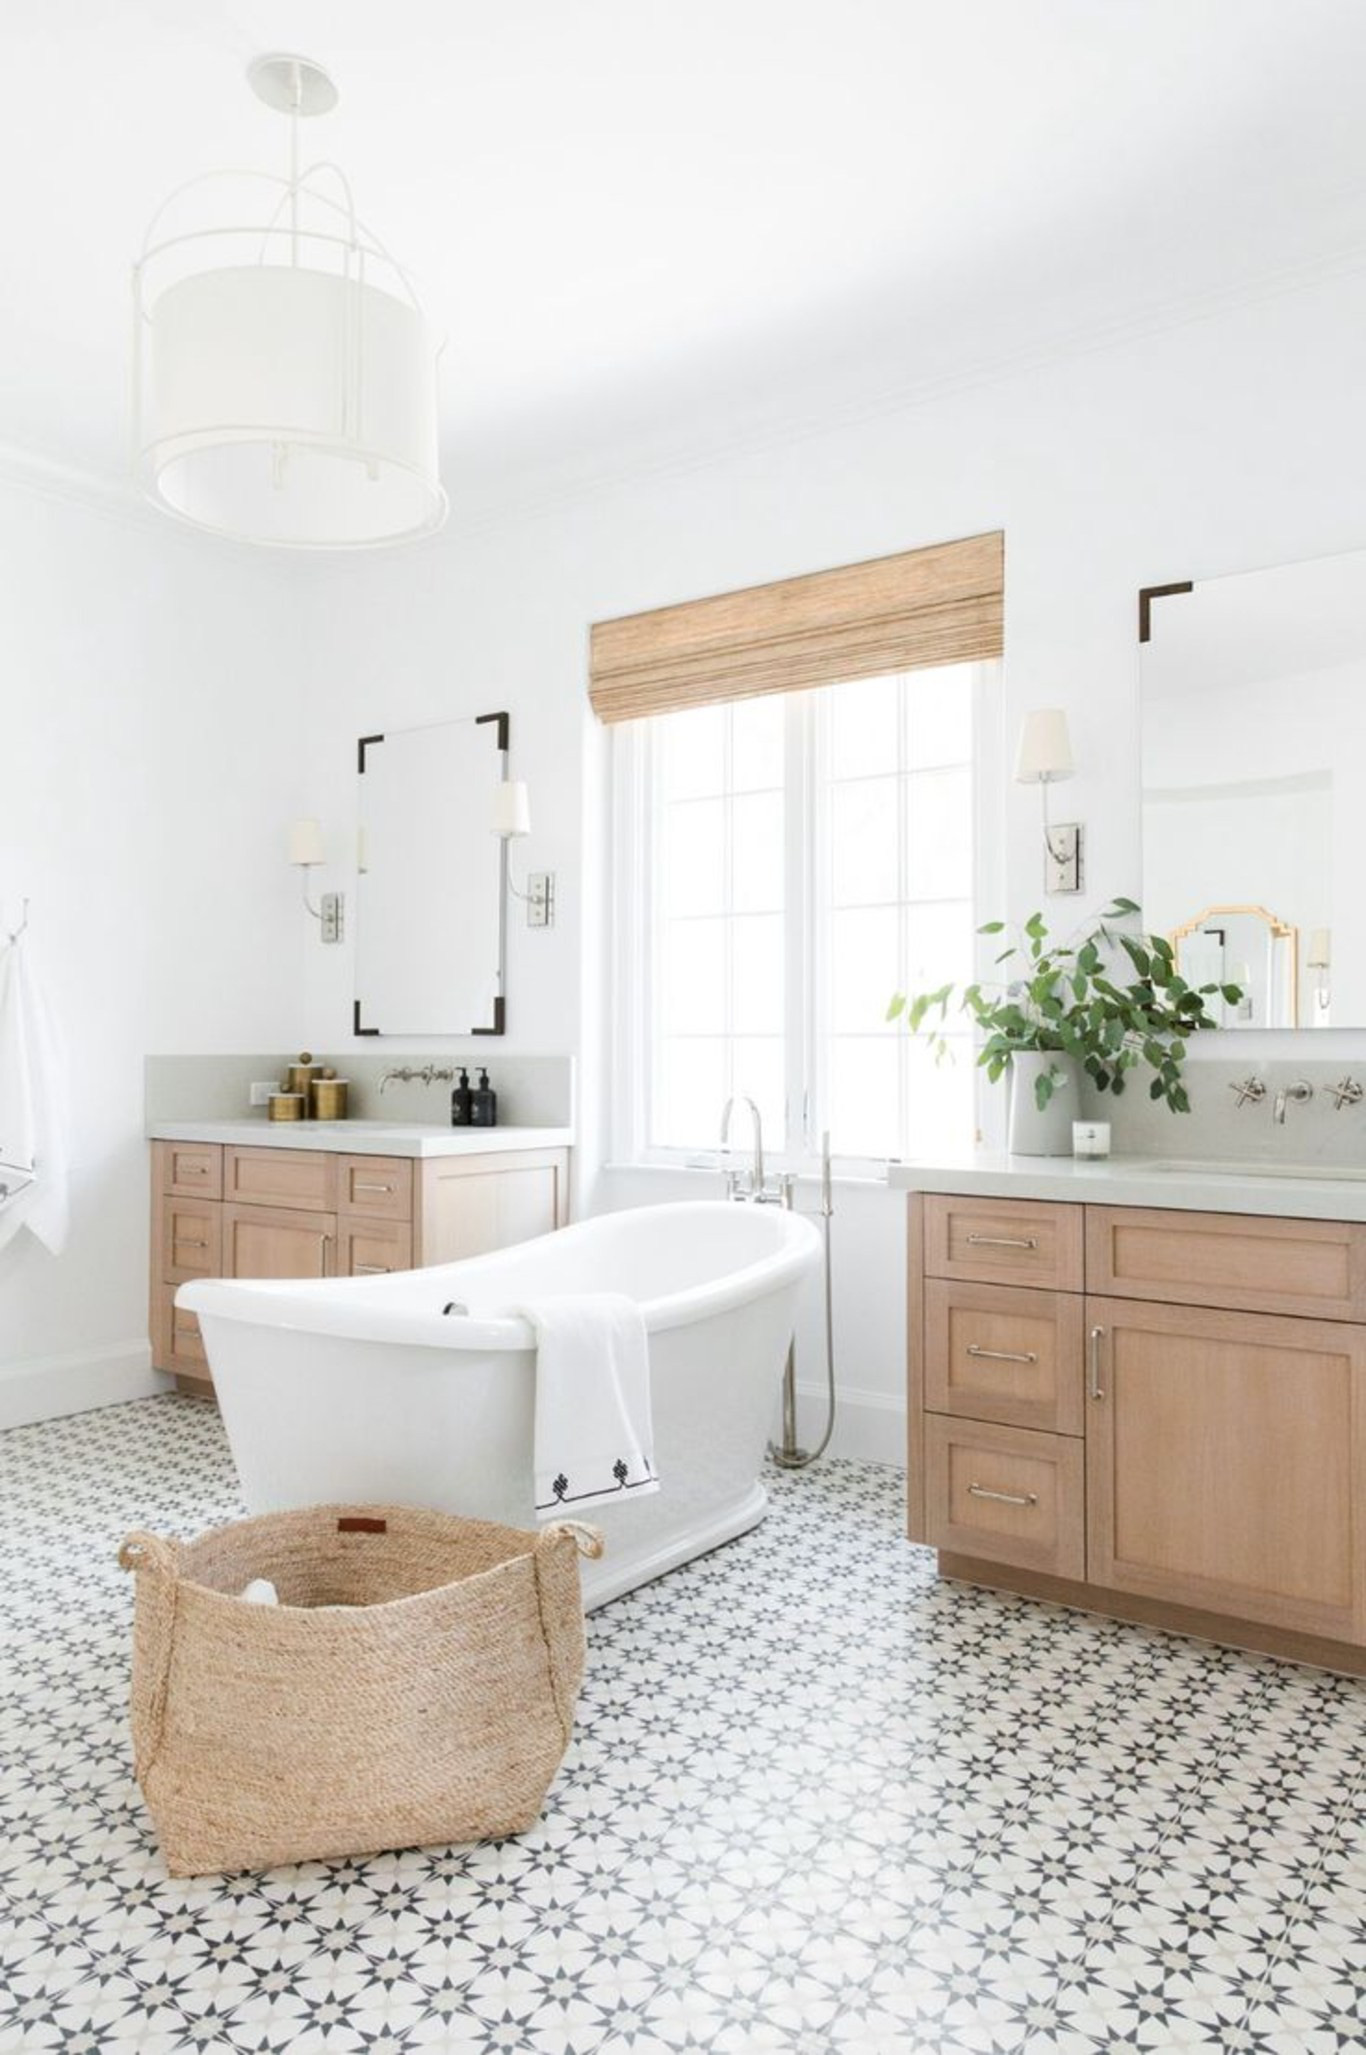  Một phòng tắm theo phong cách giao thoa chào đón bạn với tủ gỗ và giỏ đan lát cộng với sàn gạch khảm họa tiết truyền thống.